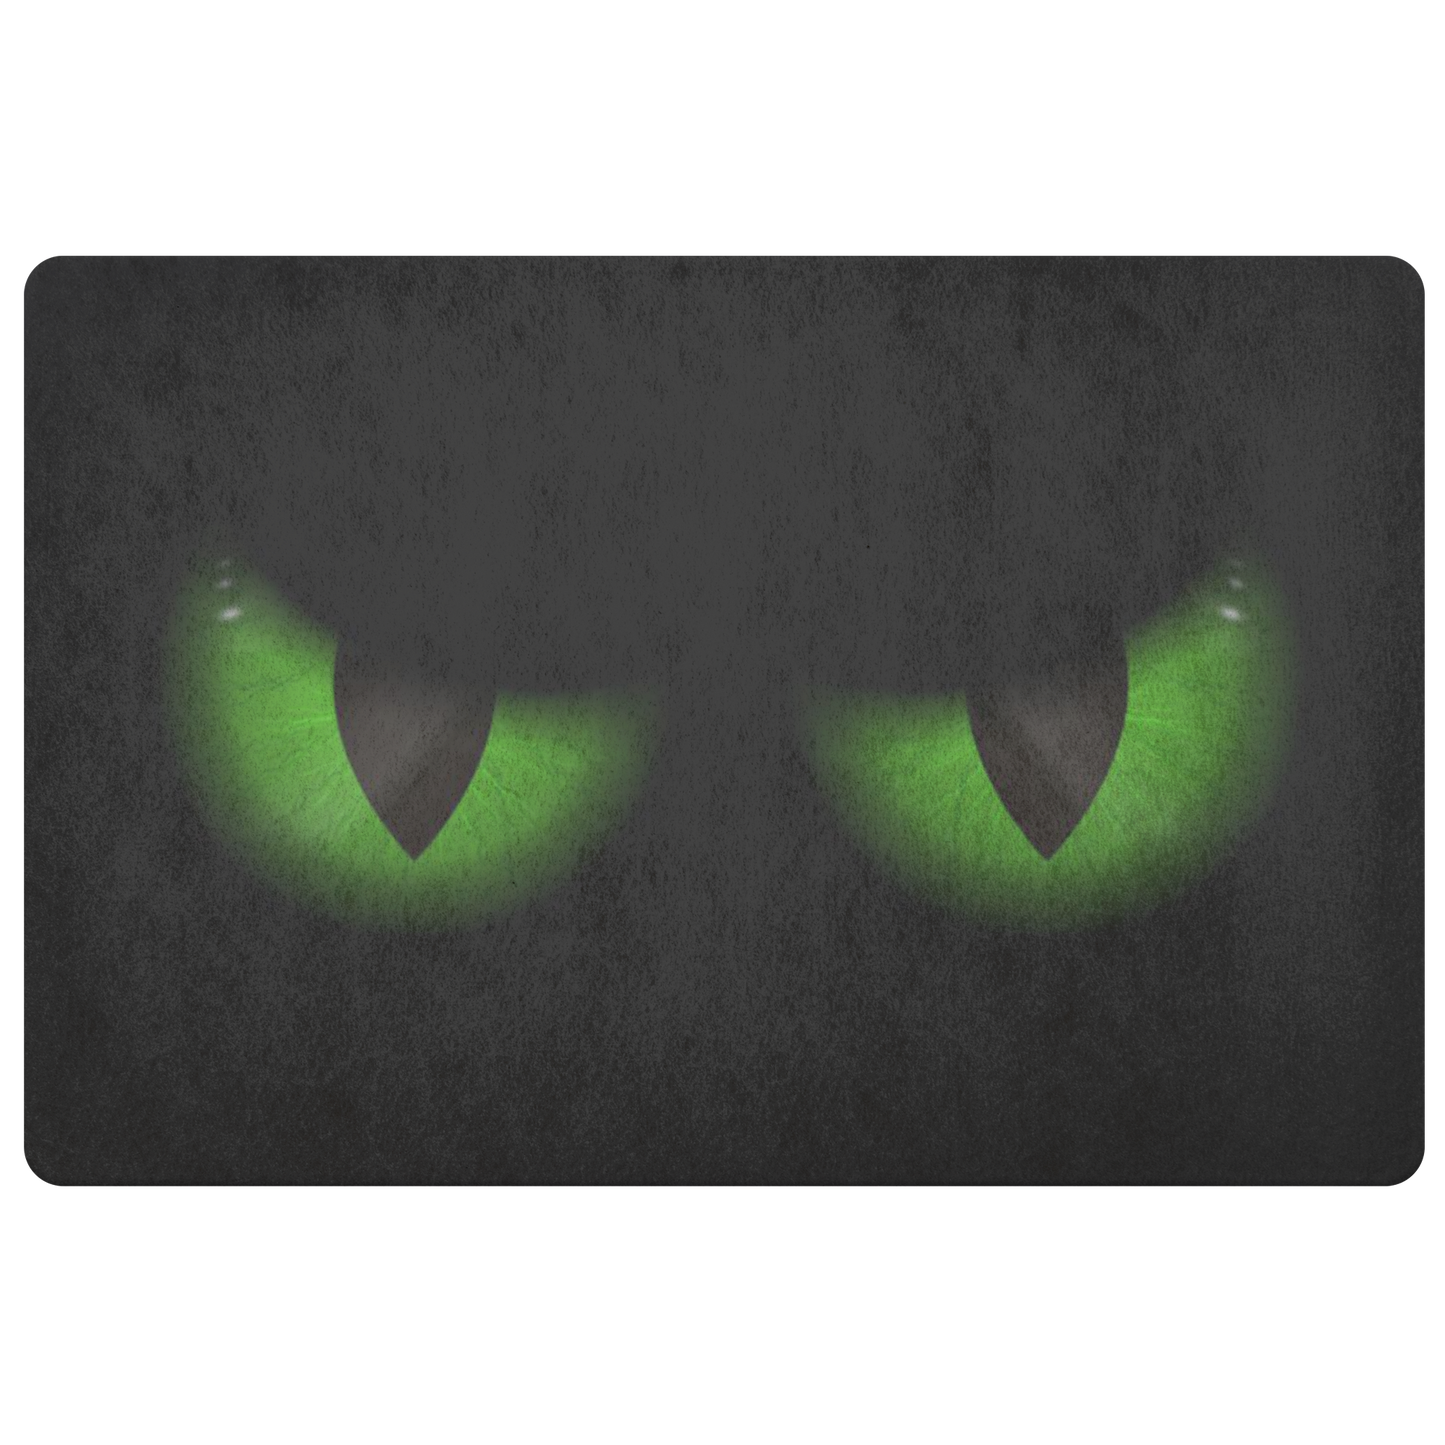 Green Evil Eyes Doormat, Funny Front Doormat, Humorous Scary Cat Halloween Outdoor Floor, Front Door Welcome Mat, Housewarming Gift Starcove Fashion